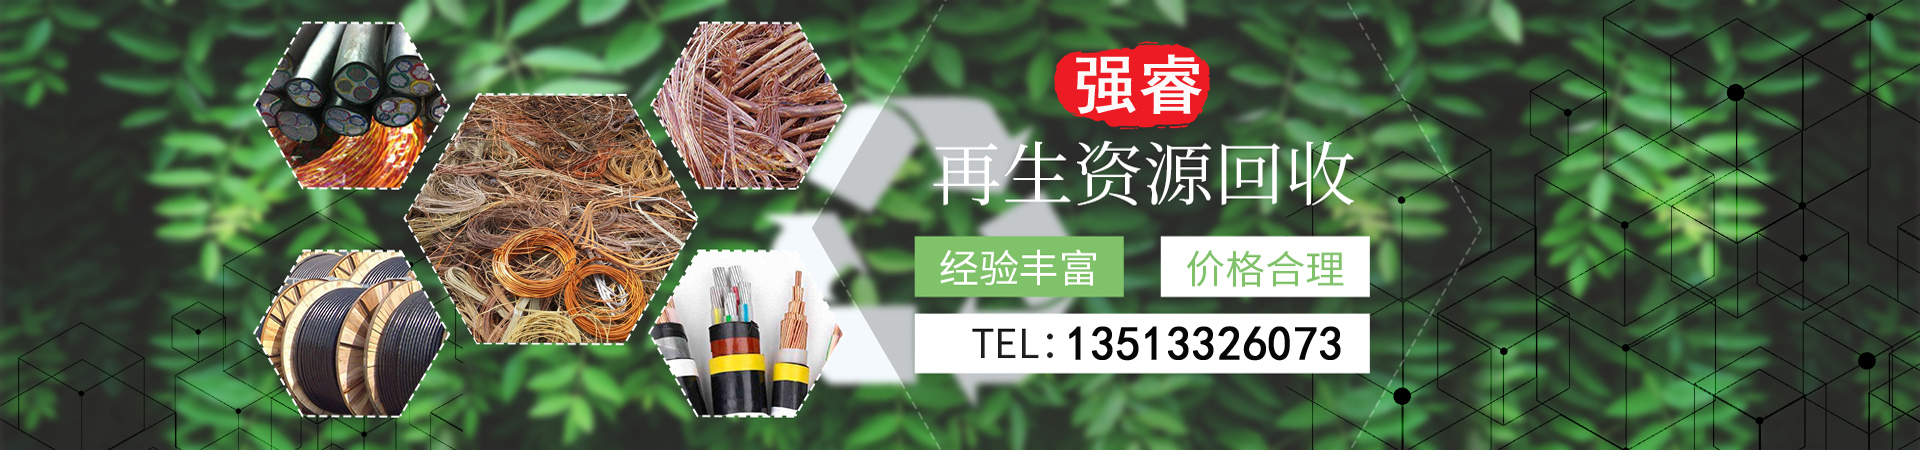 废旧电线电缆回收、桂林本地废旧电线电缆回收、桂林、桂林废旧电线电缆回收